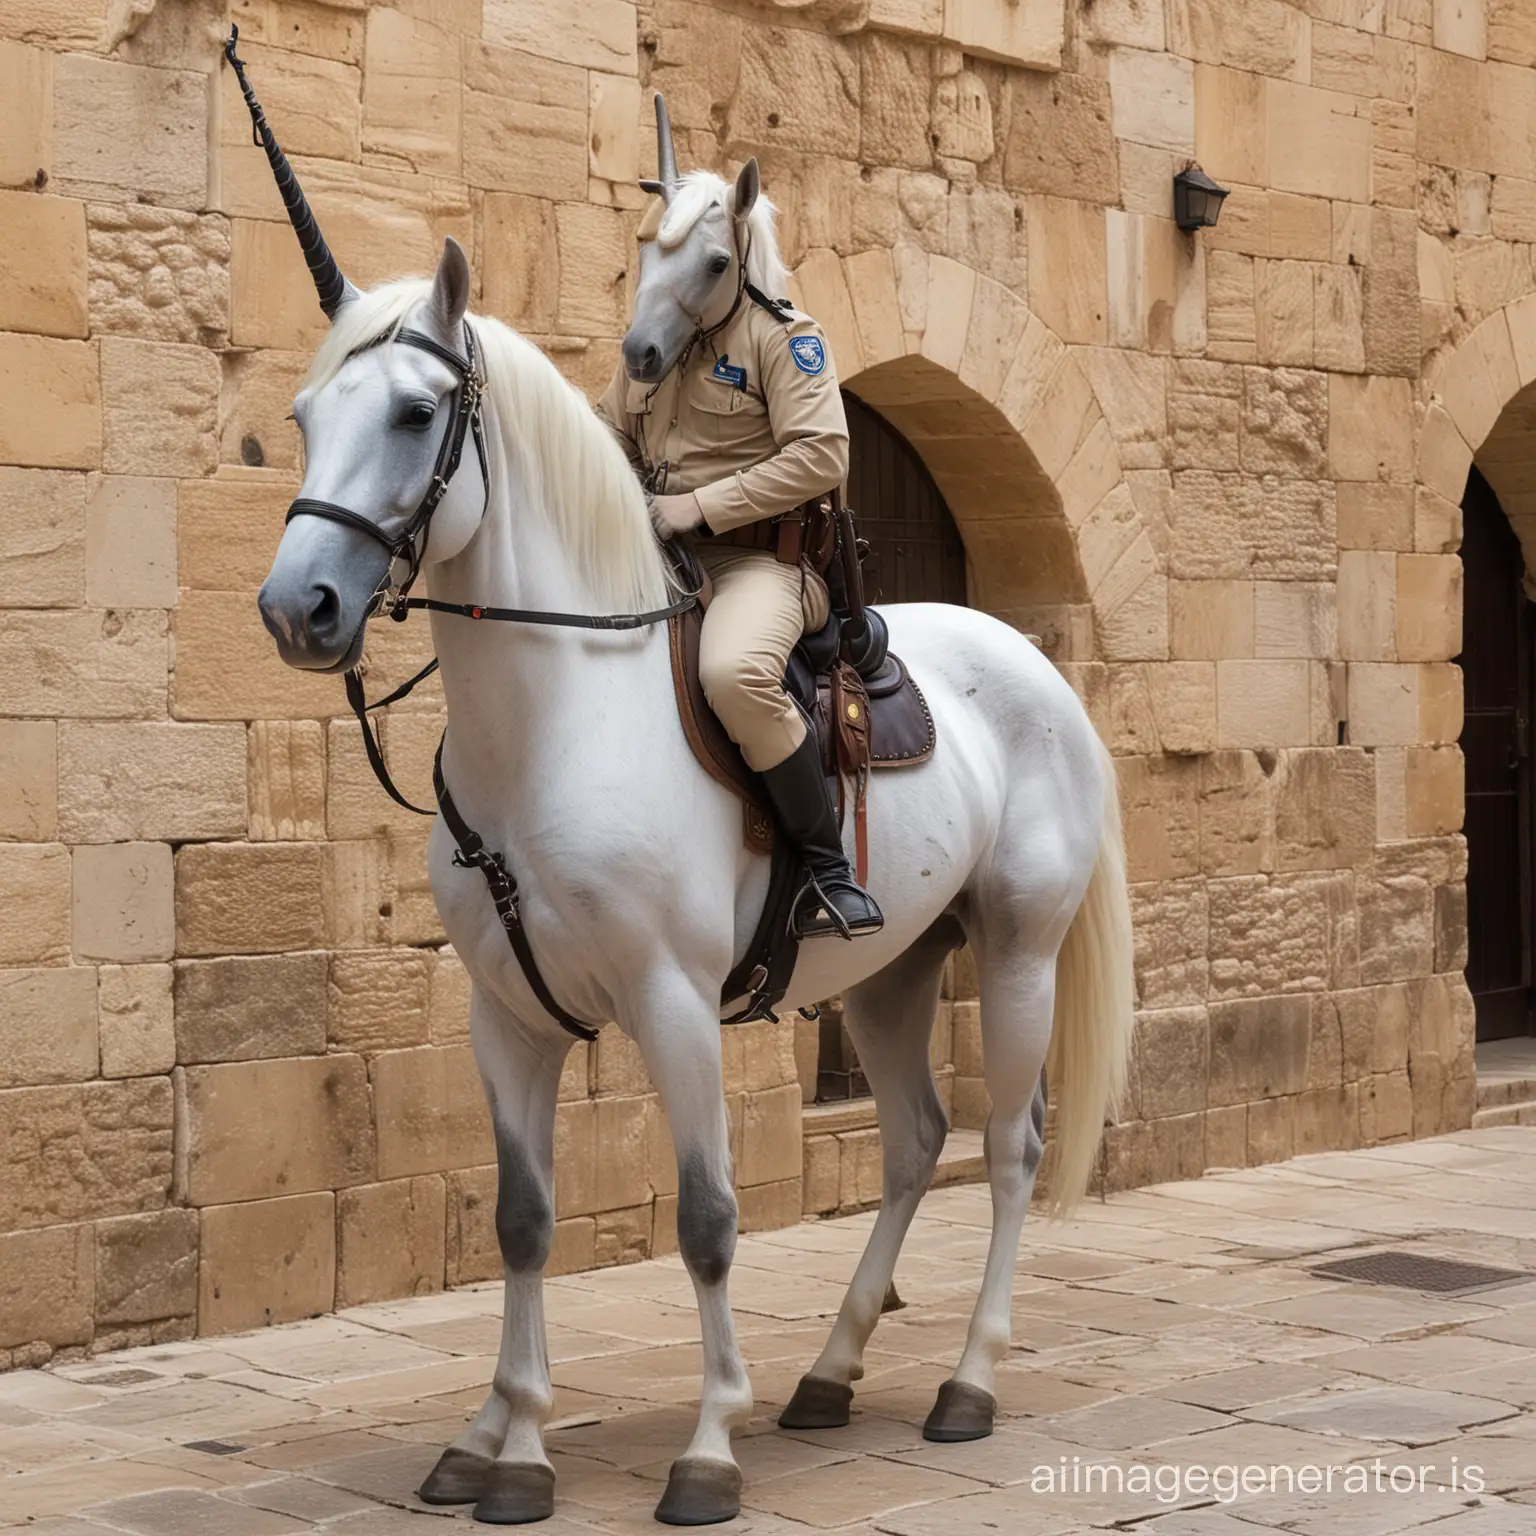 Израильский полицейский и единорог в старом городе Иерусалима. У лошади 4 ноги и один большой рог посередине